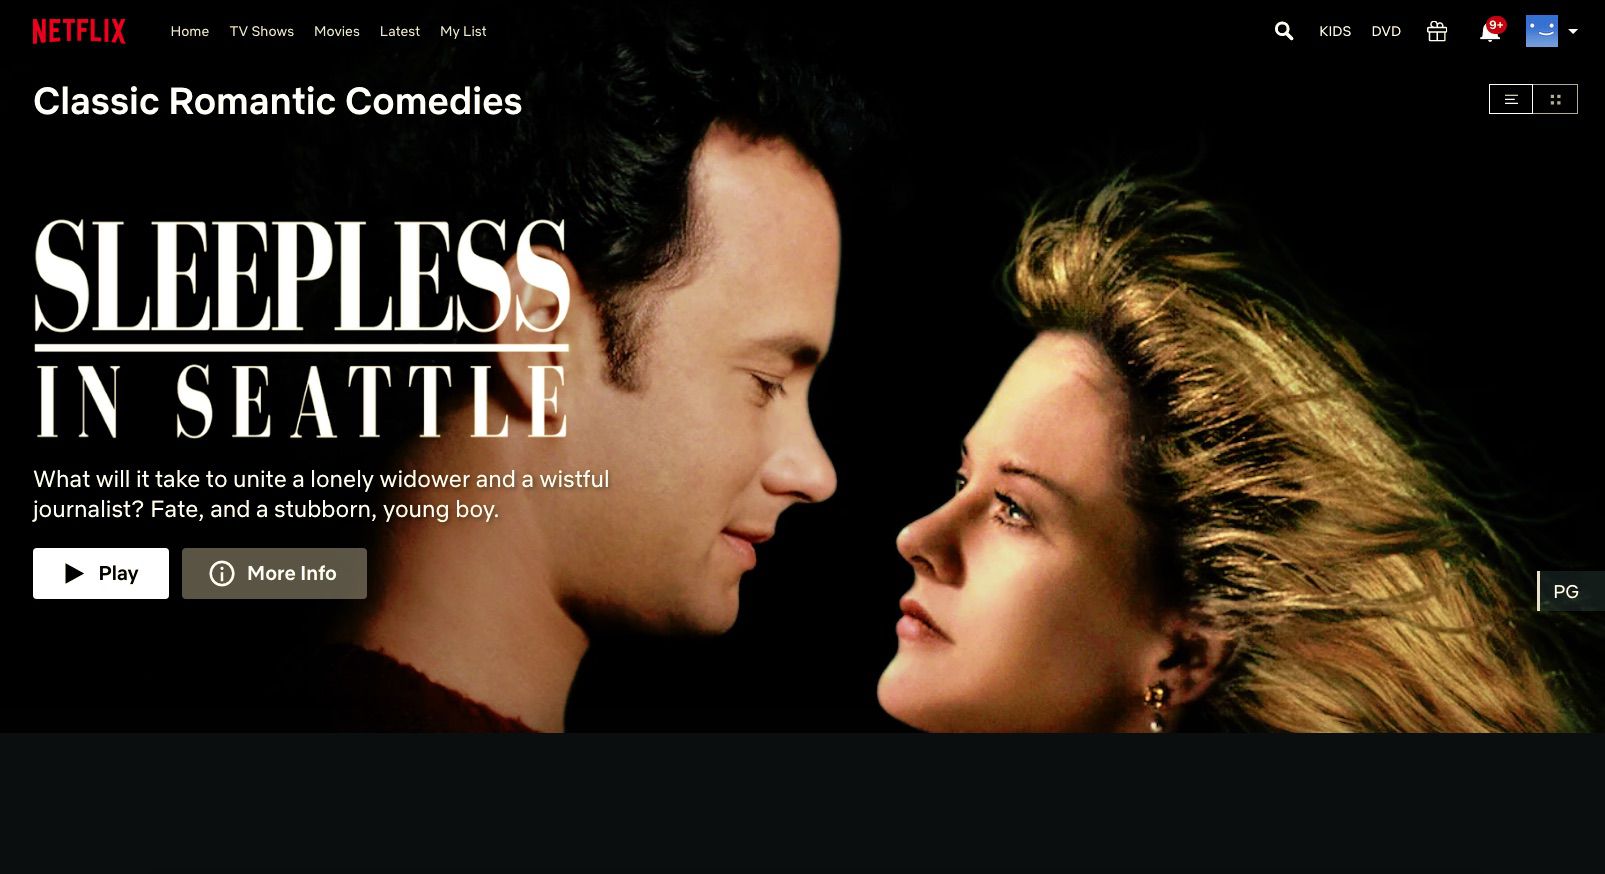 Sleepless in Seattle encontrado por meio da Netflix códigos ocultos para romances